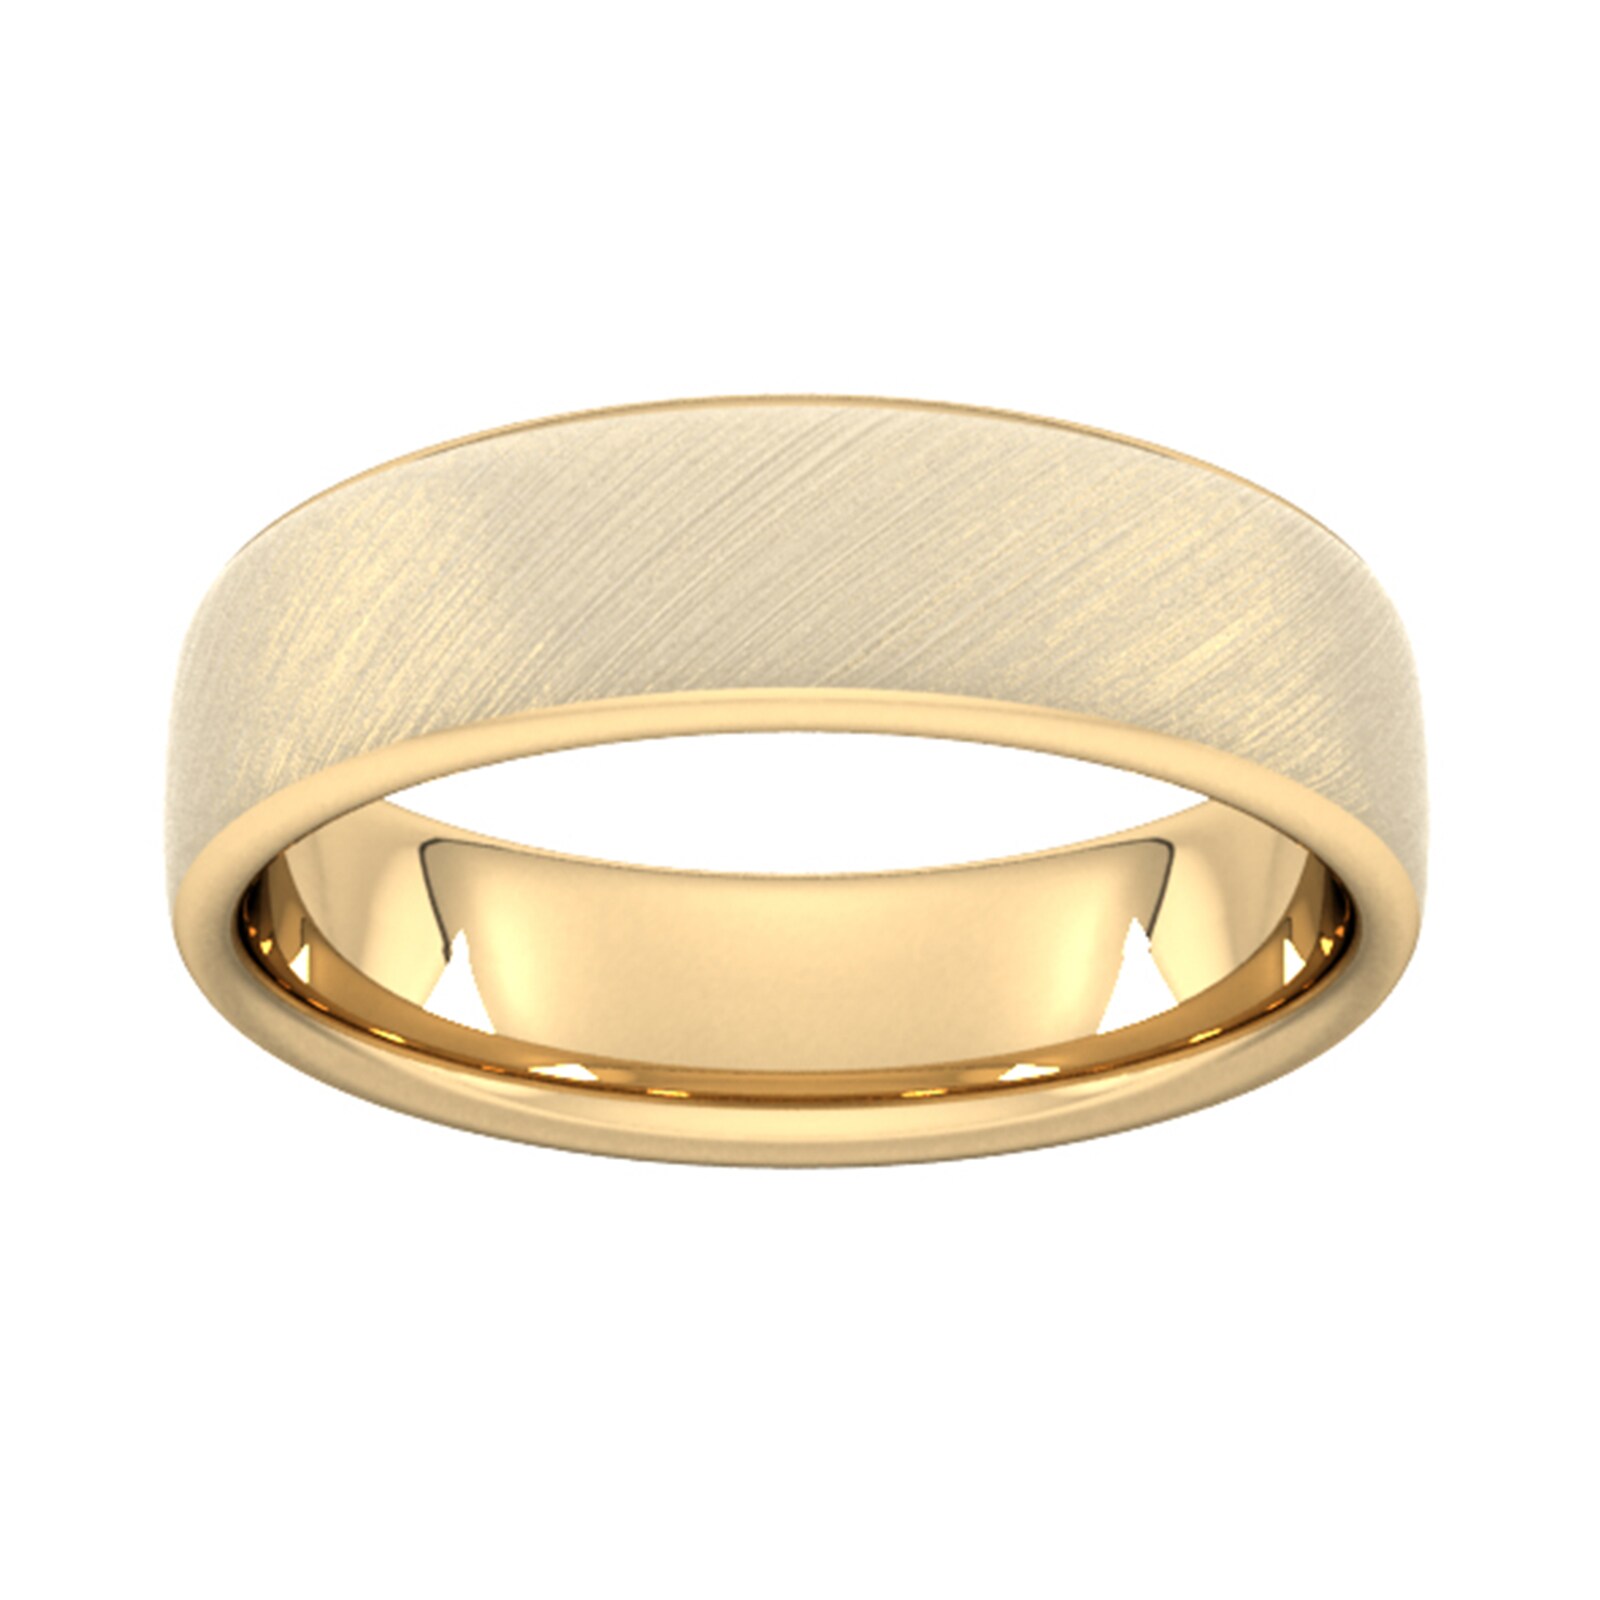 6mm Slight Court Extra Heavy Diagonal Matt Finish Wedding Ring In 9 Carat Yellow Gold - Ring Size R